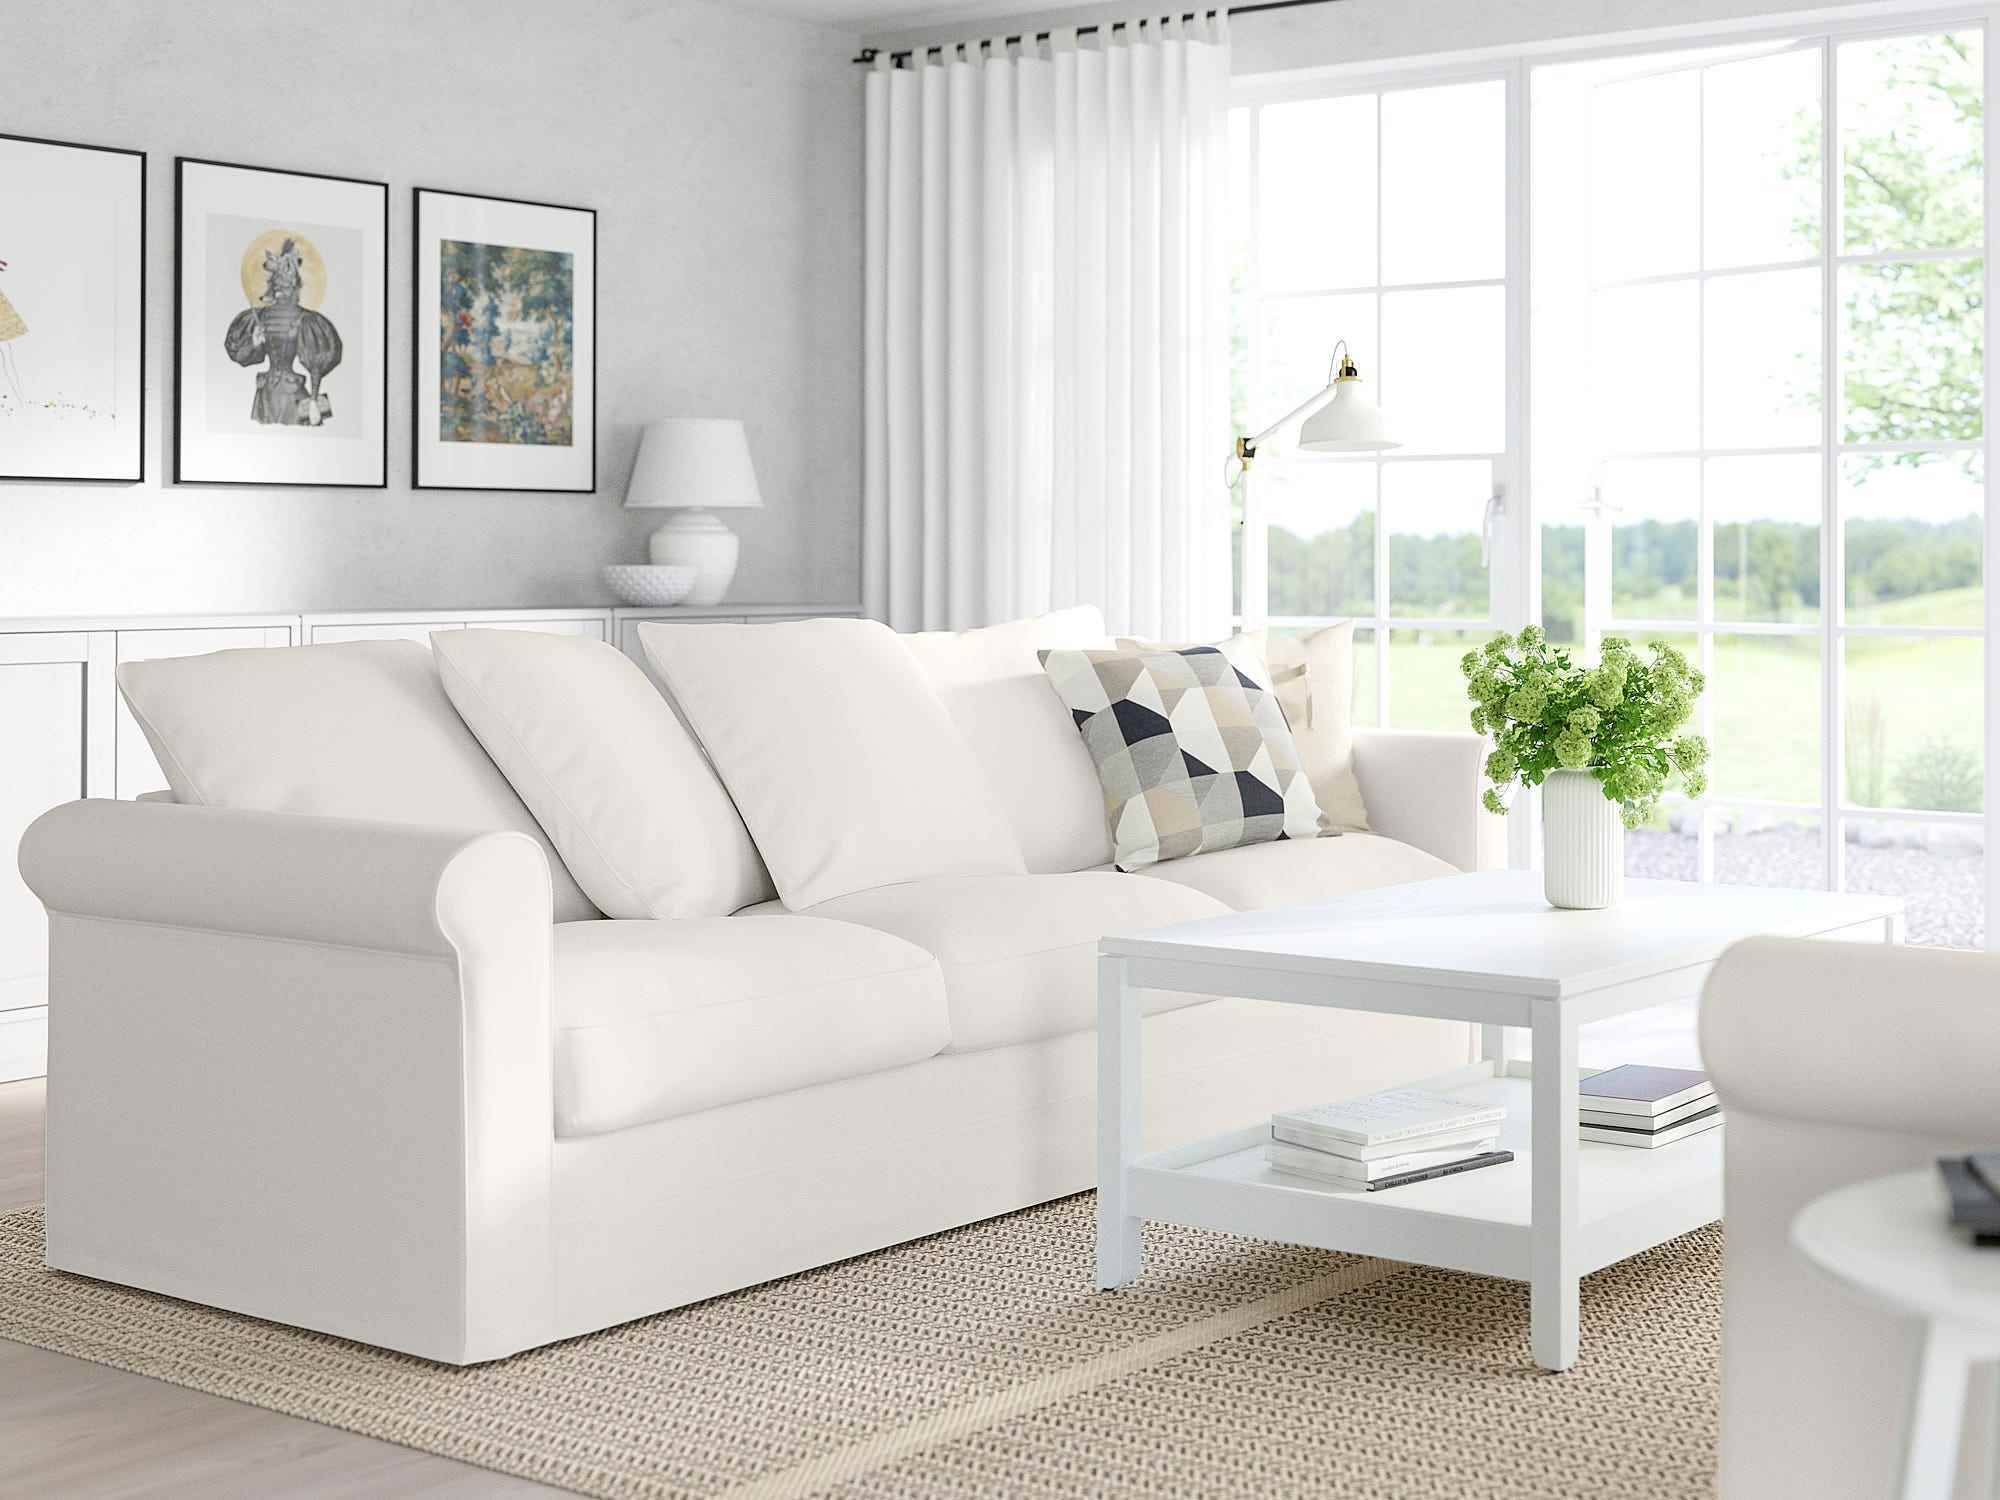 Ein weißes Ikea-Harlanda-Sofa steht in einem Wohnzimmer gegenüber einer anderen Couch mit einem Tisch dazwischen.